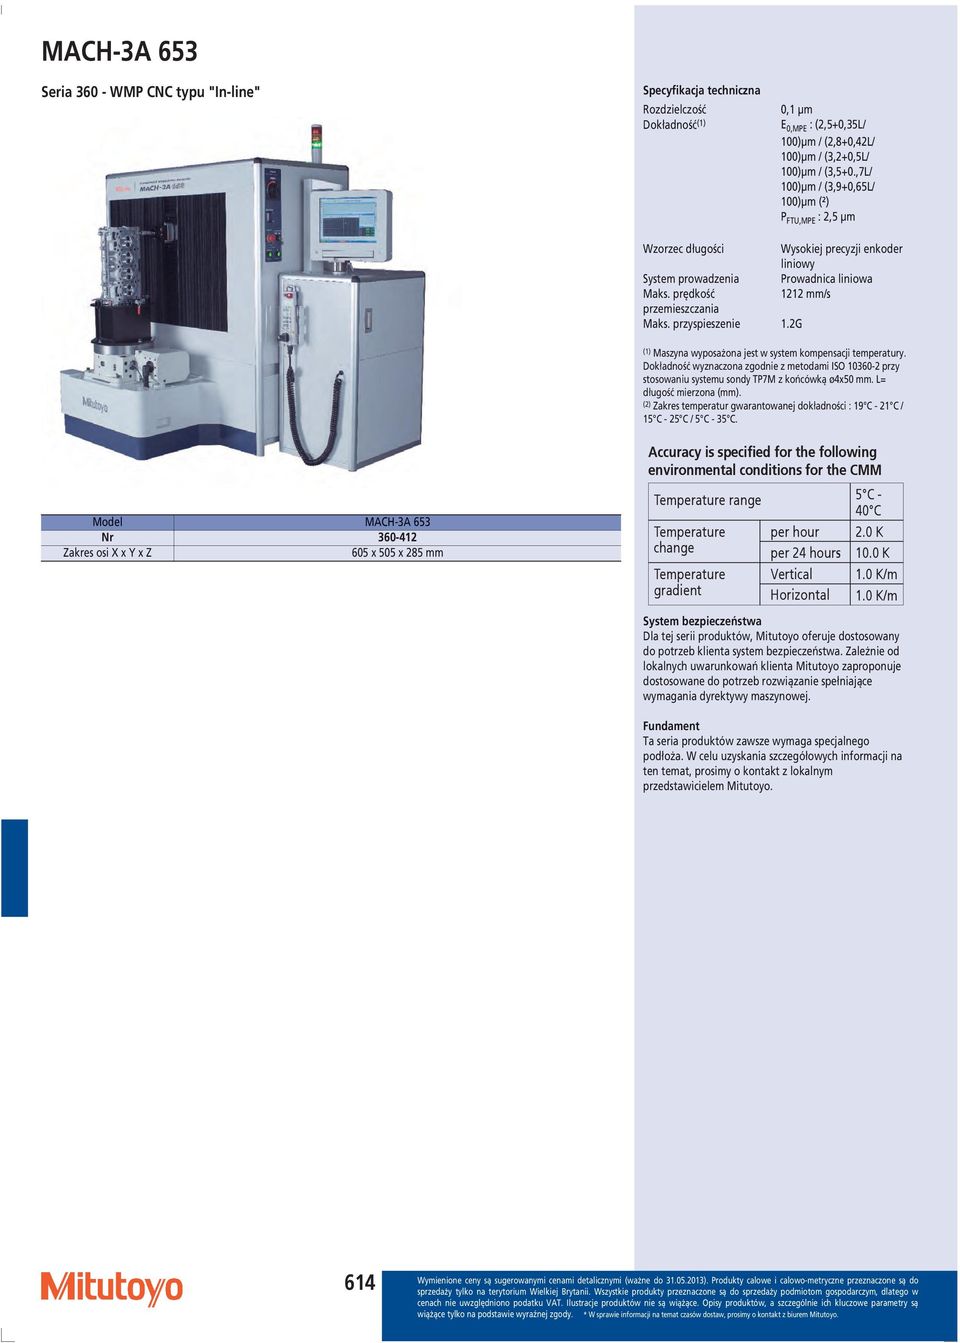 przyspieszenie 1.2G (1) Maszyna wyposażona jest w system kompensacji temperatury. Dokładność wyznaczona zgodnie z metodami ISO 10360-2 przy stosowaniu systemu sondy TP7M z końcówką ø4x50 mm.